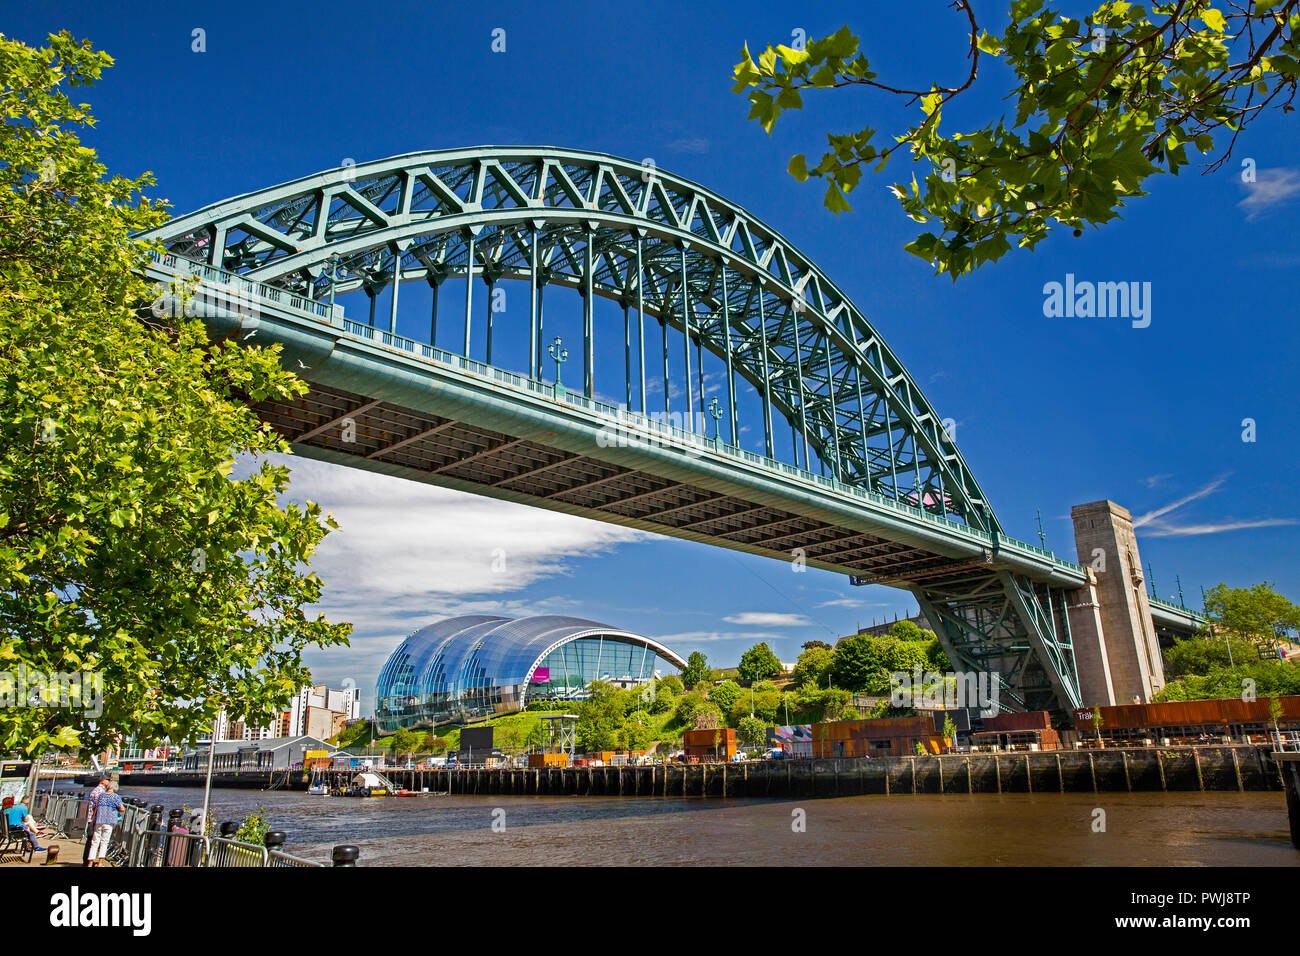 Royaume-uni, Angleterre, Tyneside, Newcastle upon Tyne, Tyne Bridge et Gateshead Sage Centre à partir de la rivière Tyne Quayside Banque D'Images